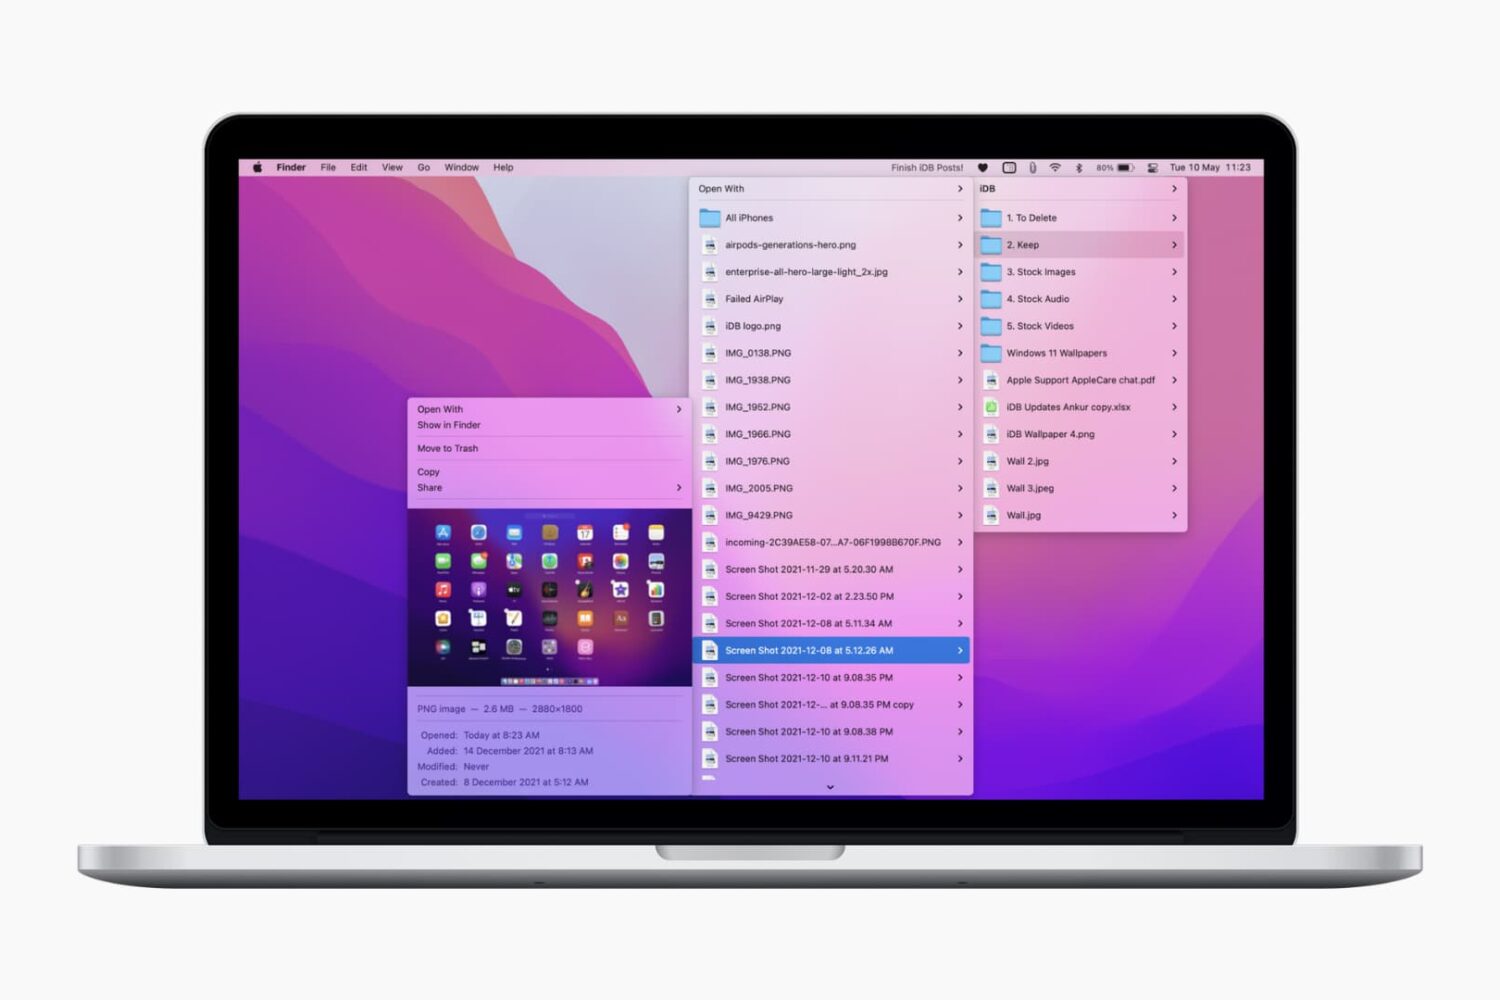 Pin folder to Mac menu bar to open it instantly